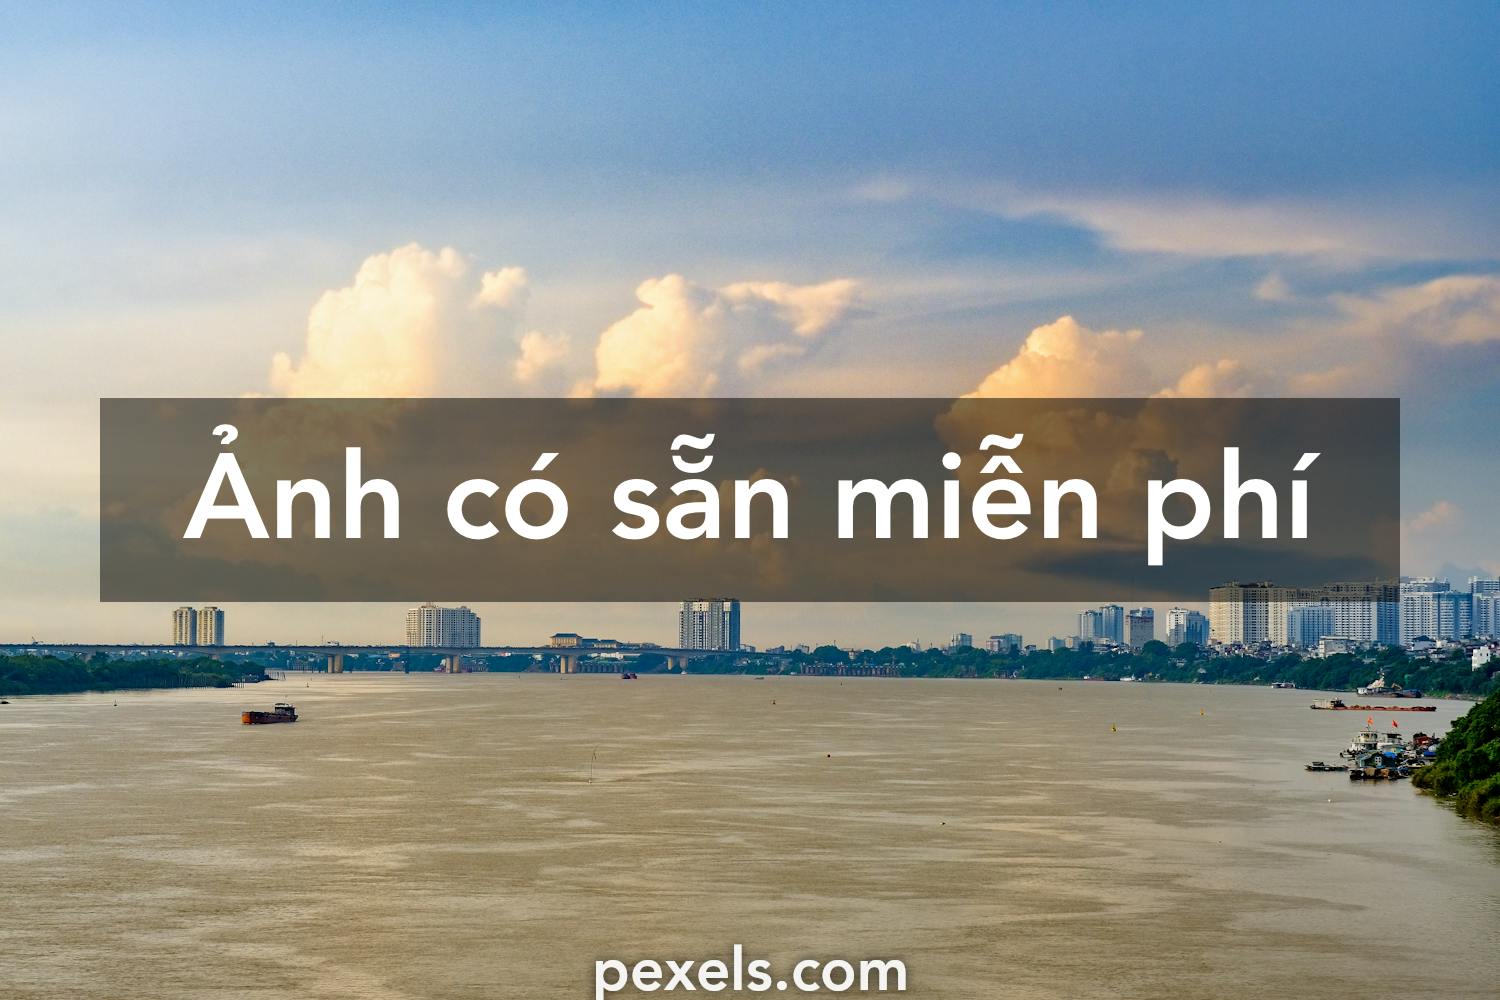 Tìm kiếm hình ảnh đẹp về Việt Nam.